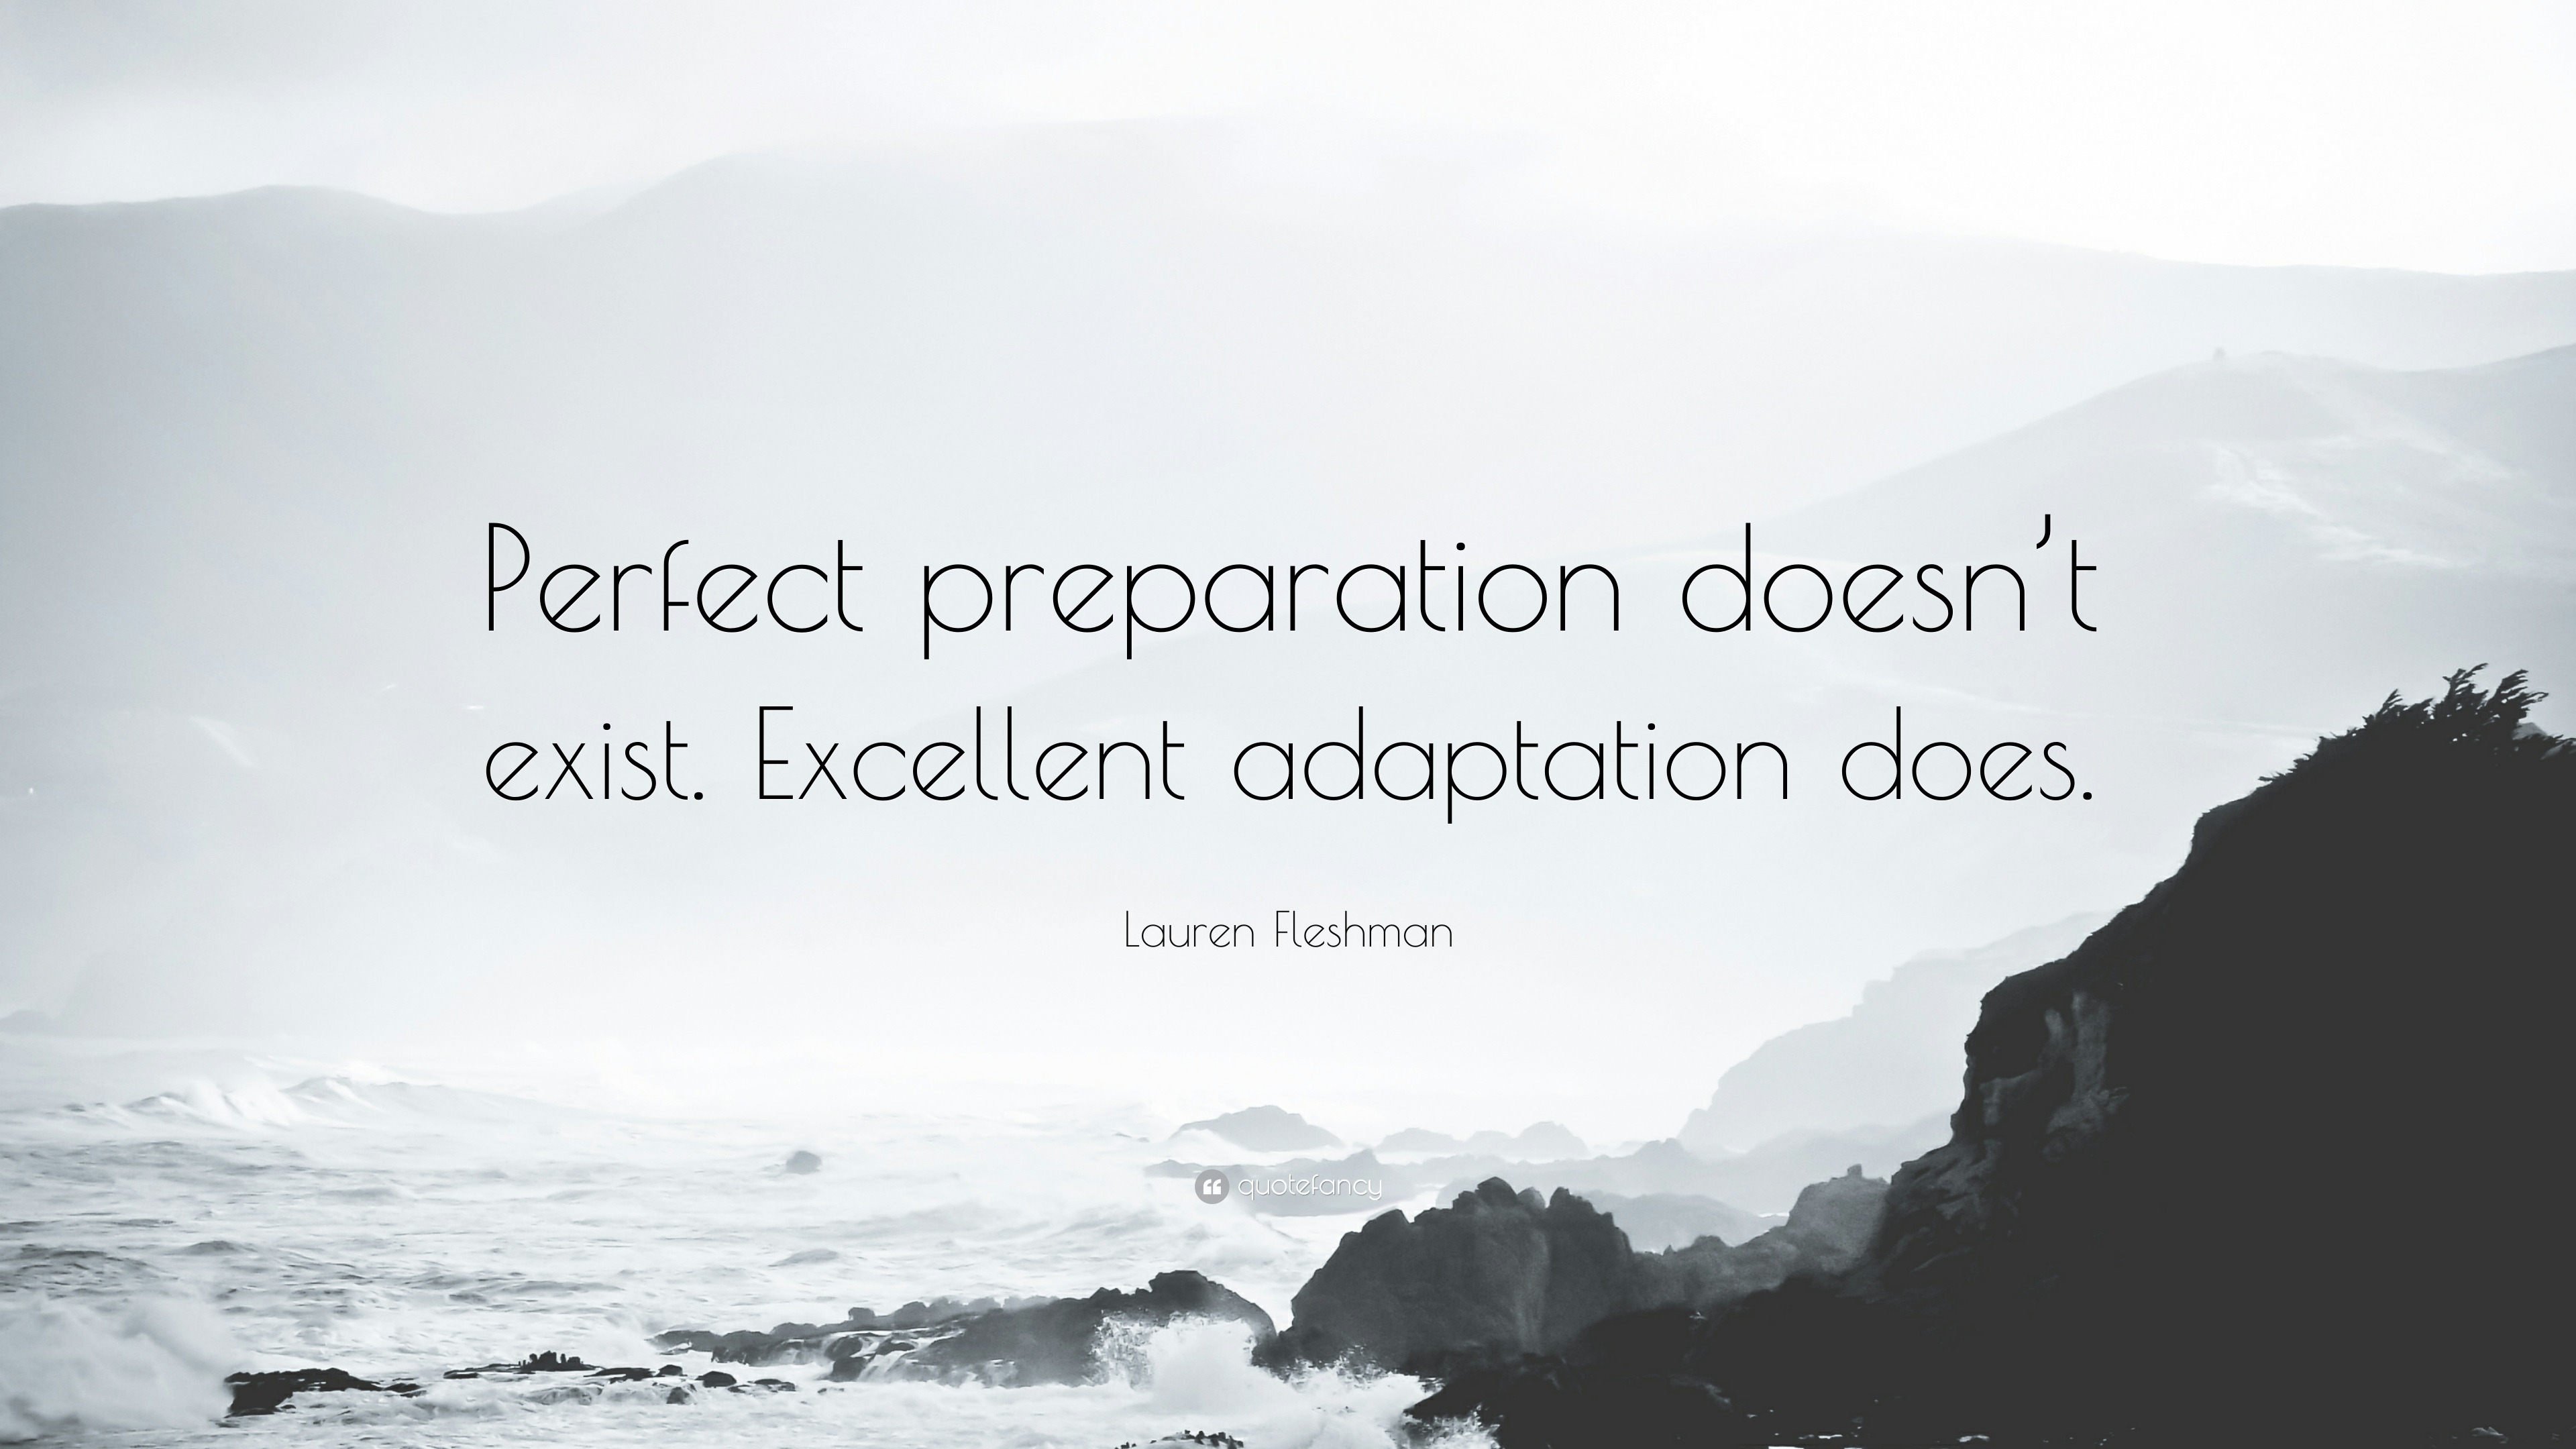 Lauren Fleshman Quote: “Perfect preparation doesn't exist